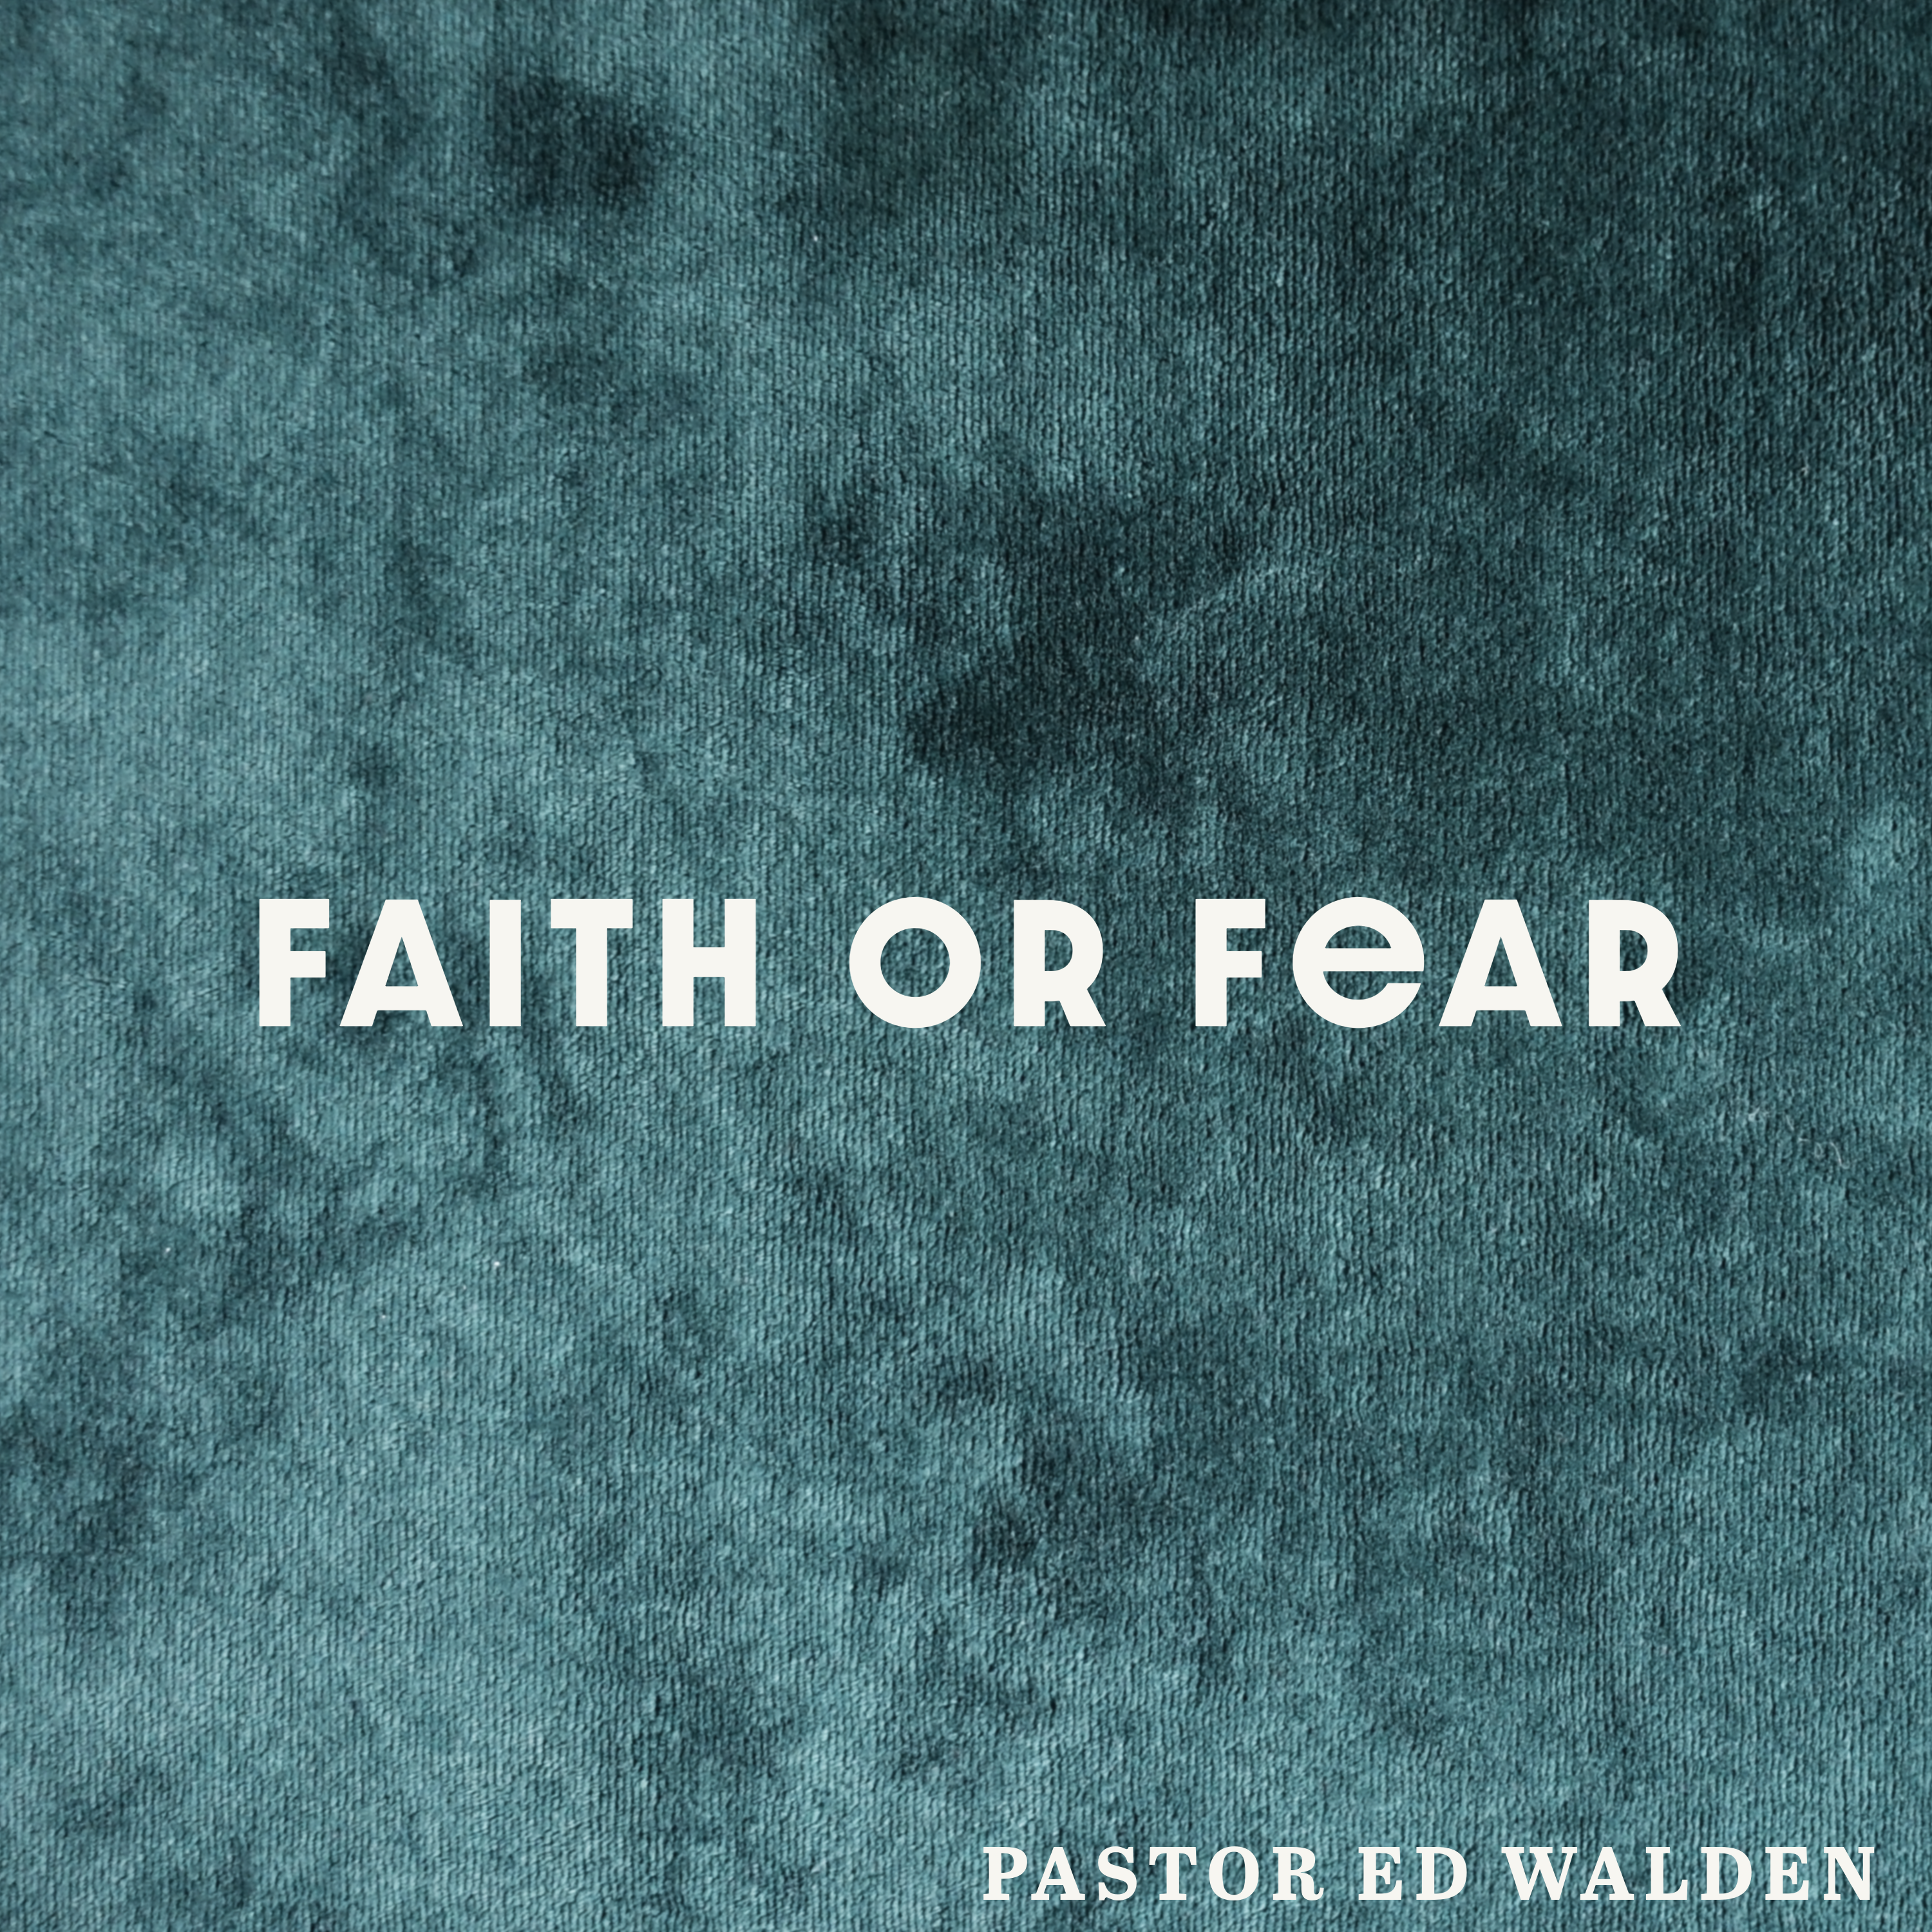 Faith or Fear